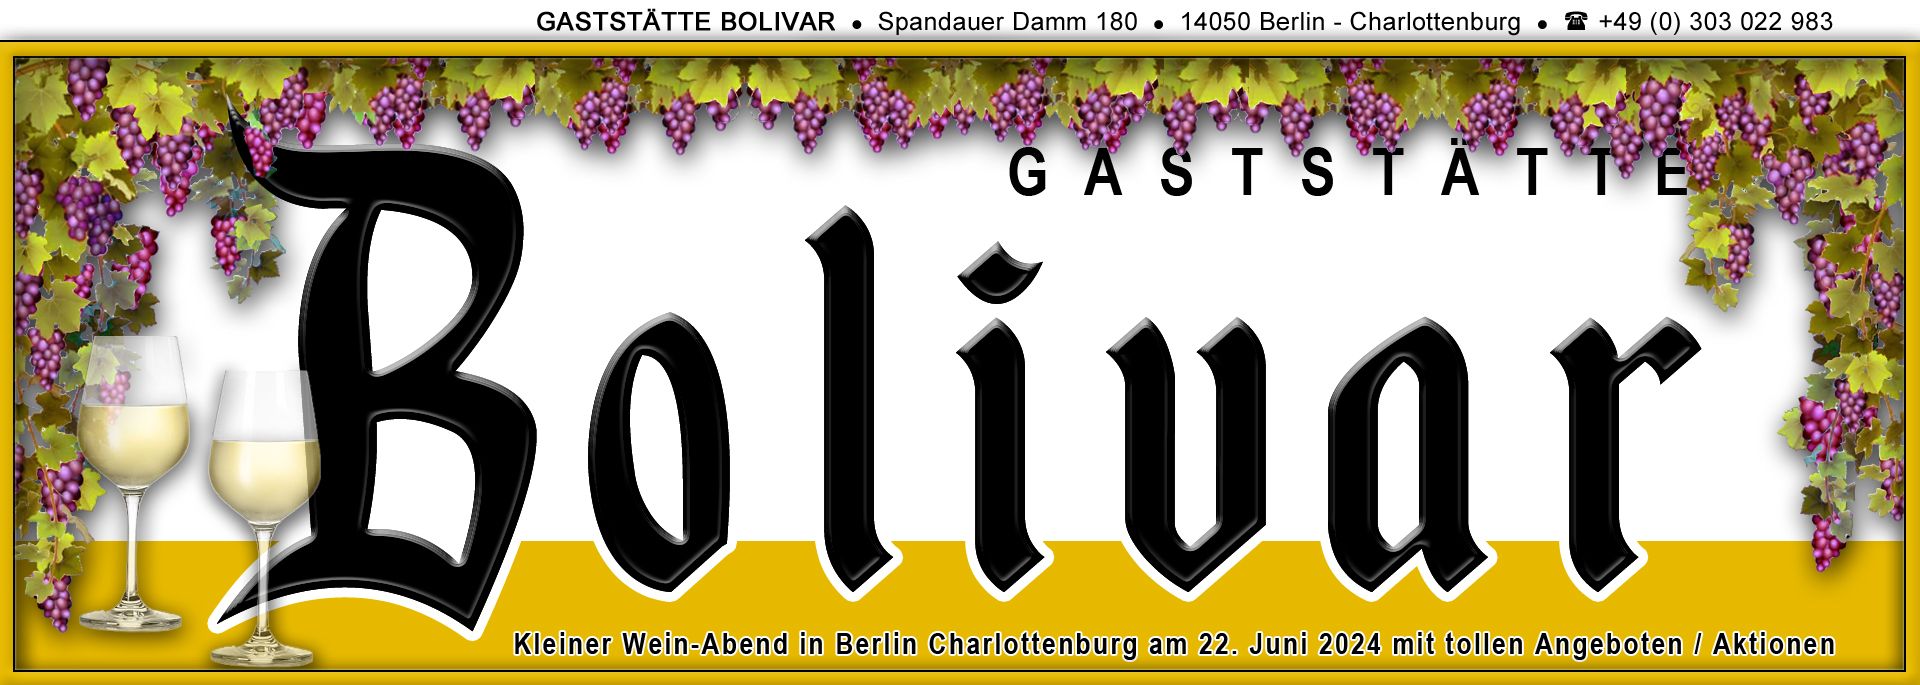 Im Bolivar, in Berlin Charlottenburg ist Wein-Abend am 22. Juni 2024 mit tollen Angeboten / Aktionen